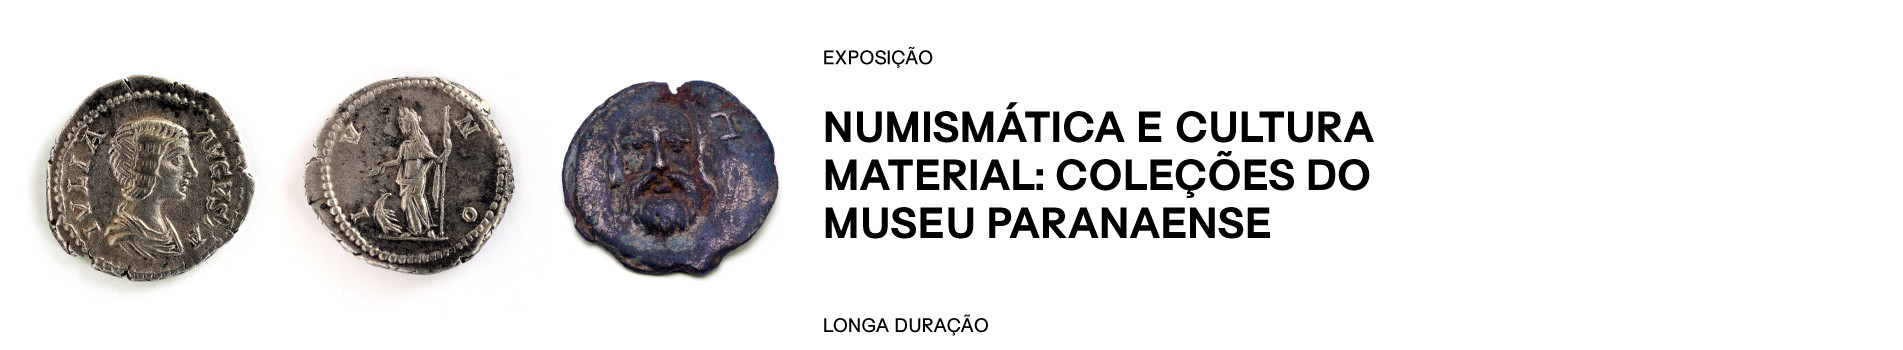 Banner exposição Numismática e cultura material